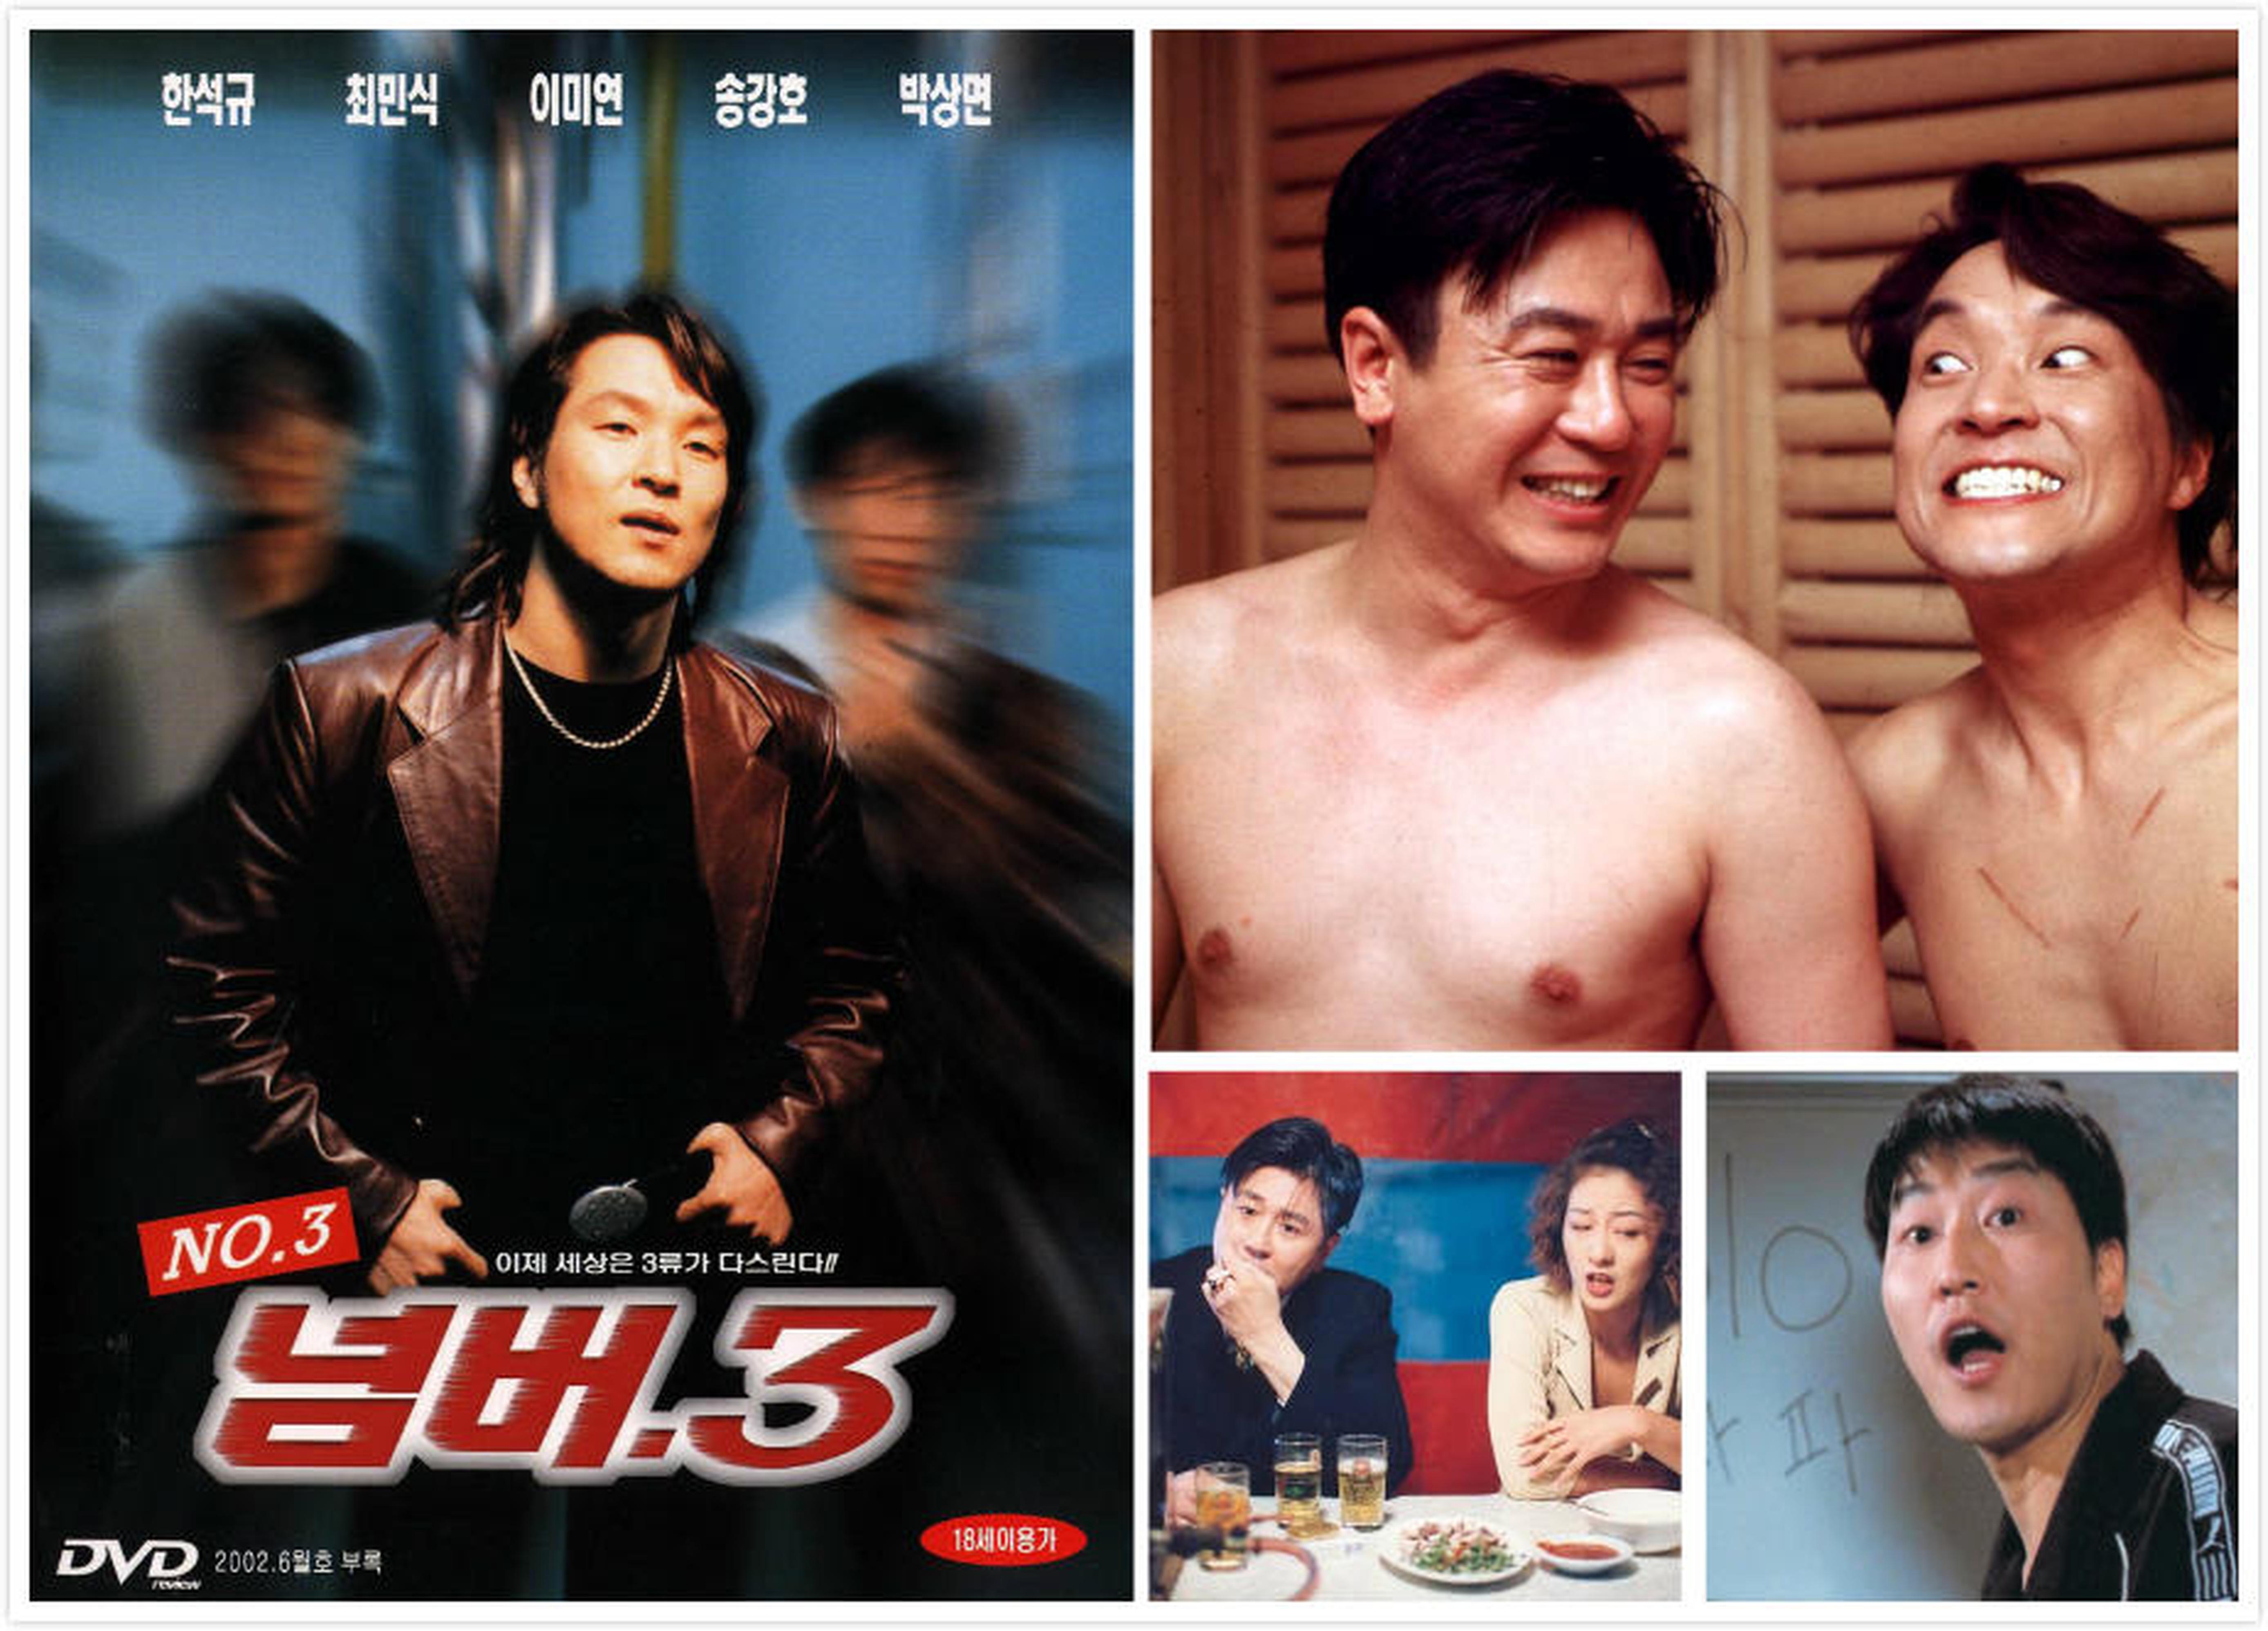 【1990-2000】《黑帮三号再上位》(1997)导演宋能汉。宋康昊虽然戏份不多，但十足出彩。